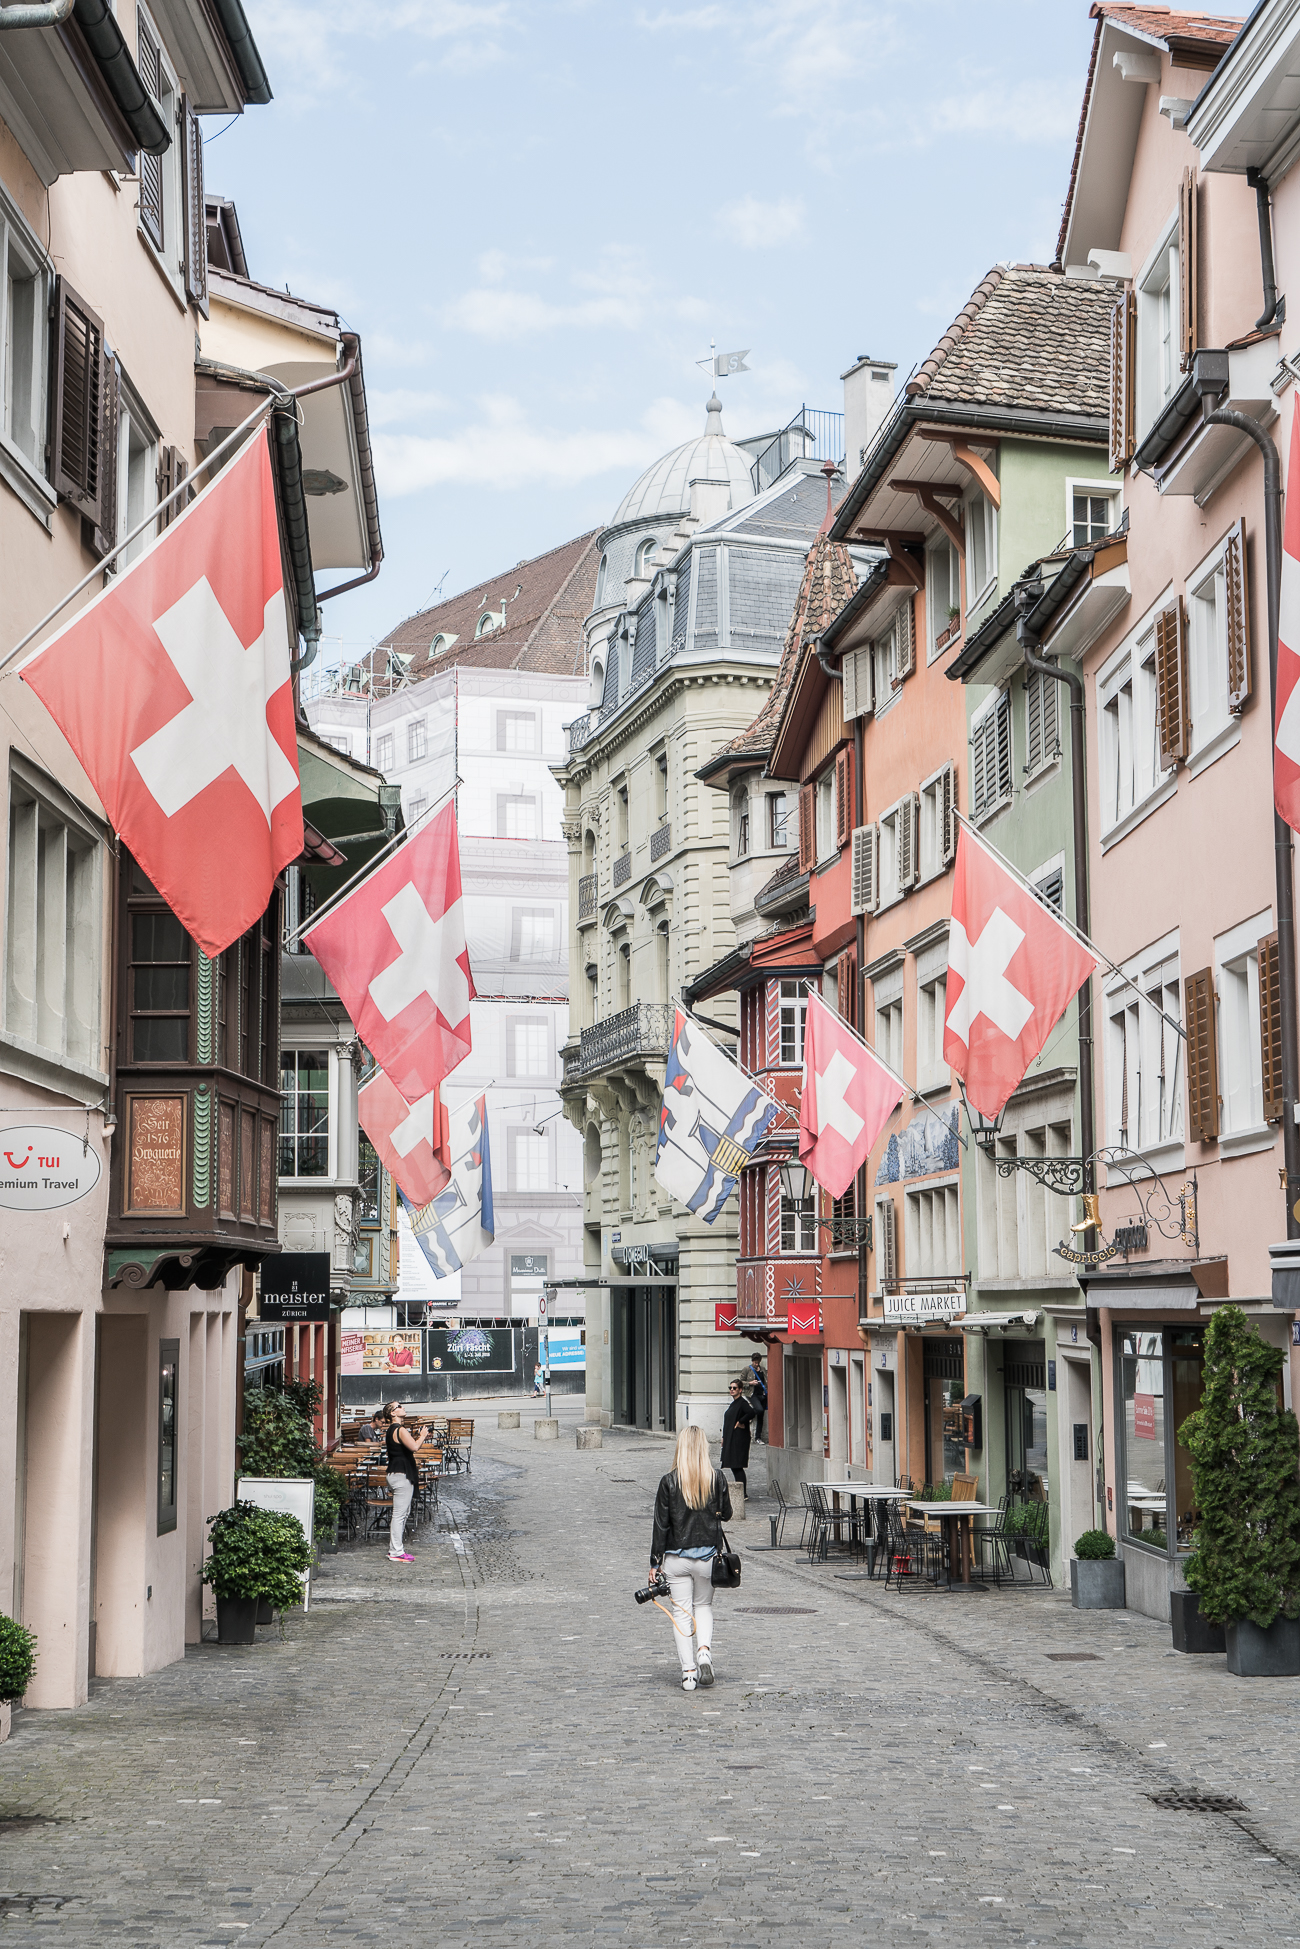 Travel Guide : Visiting Zurich, Switzerland / See & Savour